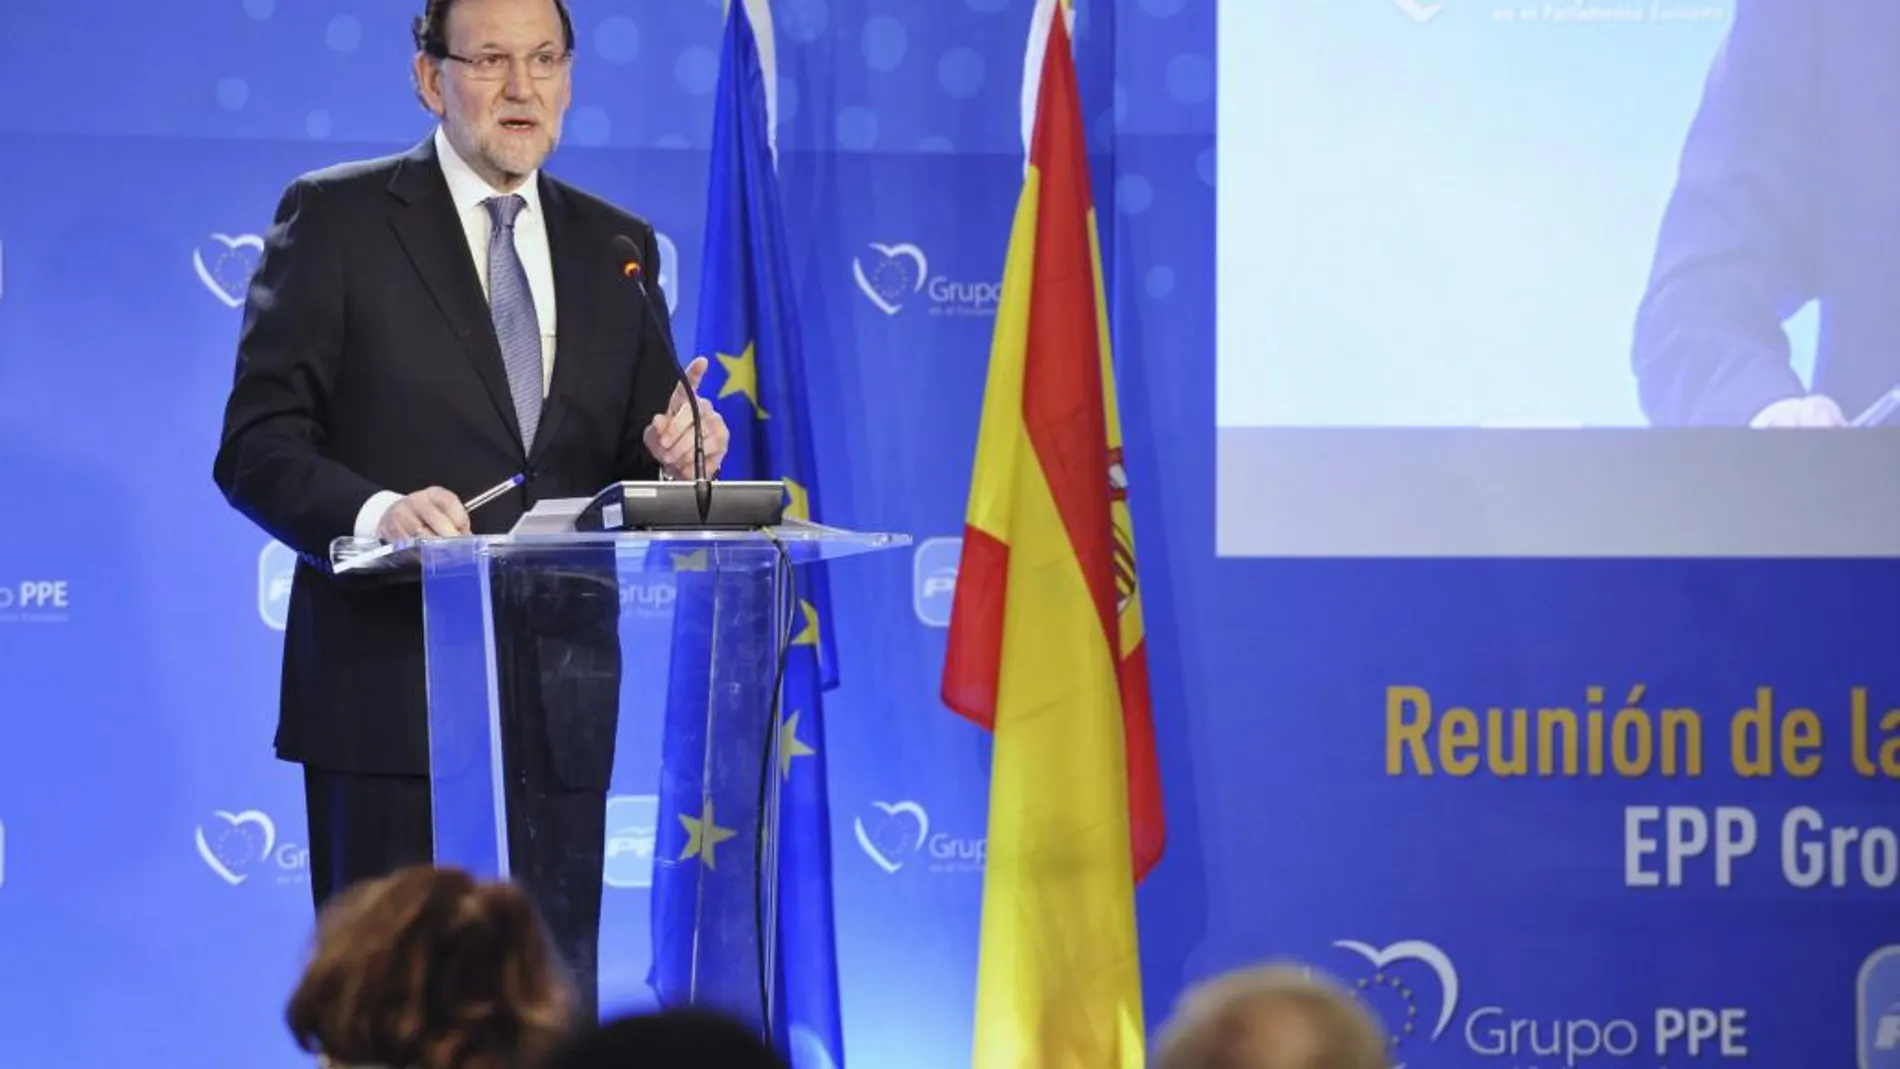 Mariano Rajoy, inaugura la reunión de la Mesa Política del Grupo Popular Europeo, que se celebra en Toledo hasta el viernes.